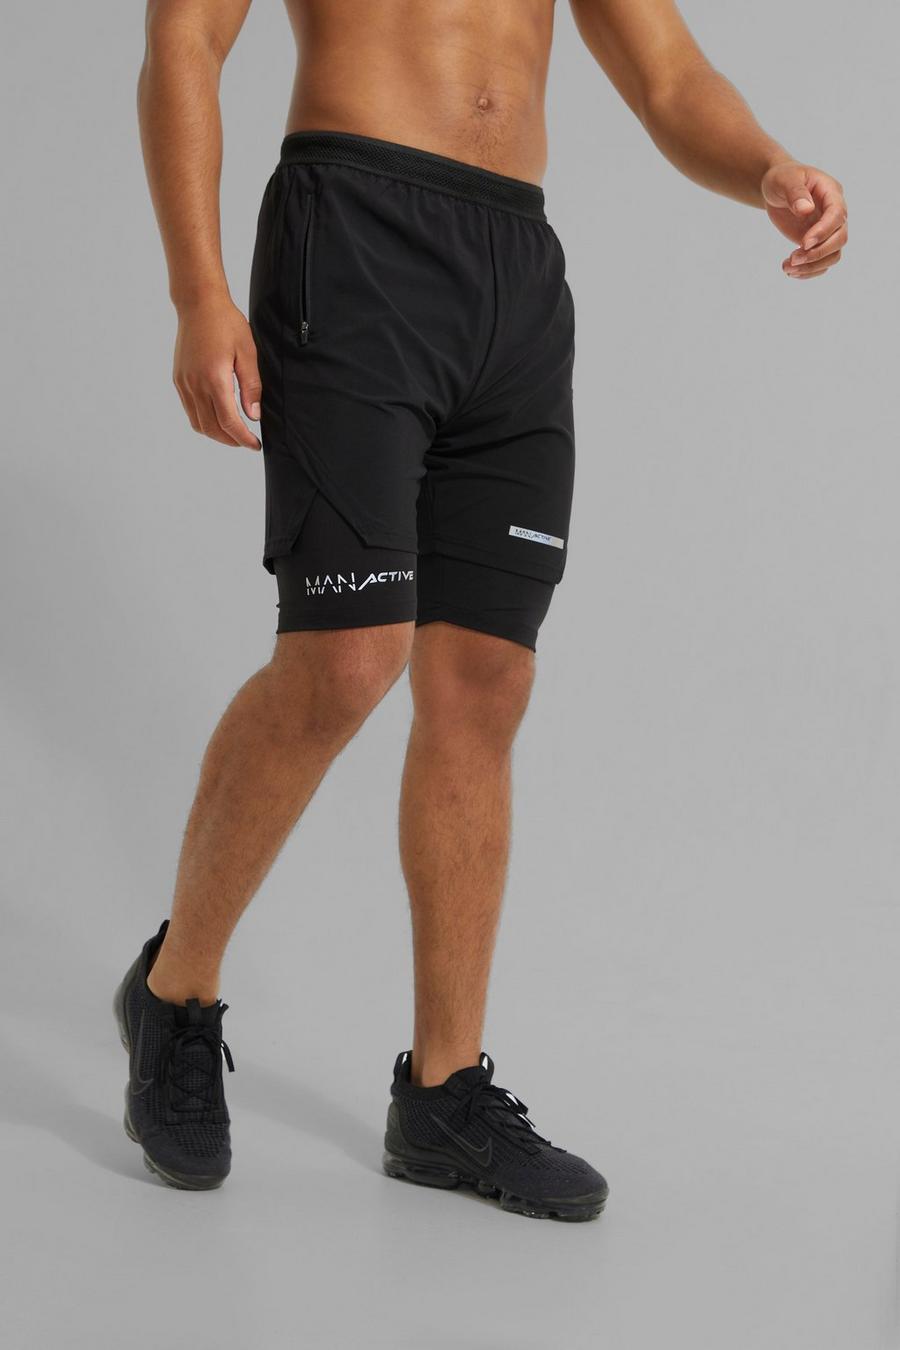 Tall Man Active 2-in-1 Shorts mit Print-Detail, Black schwarz